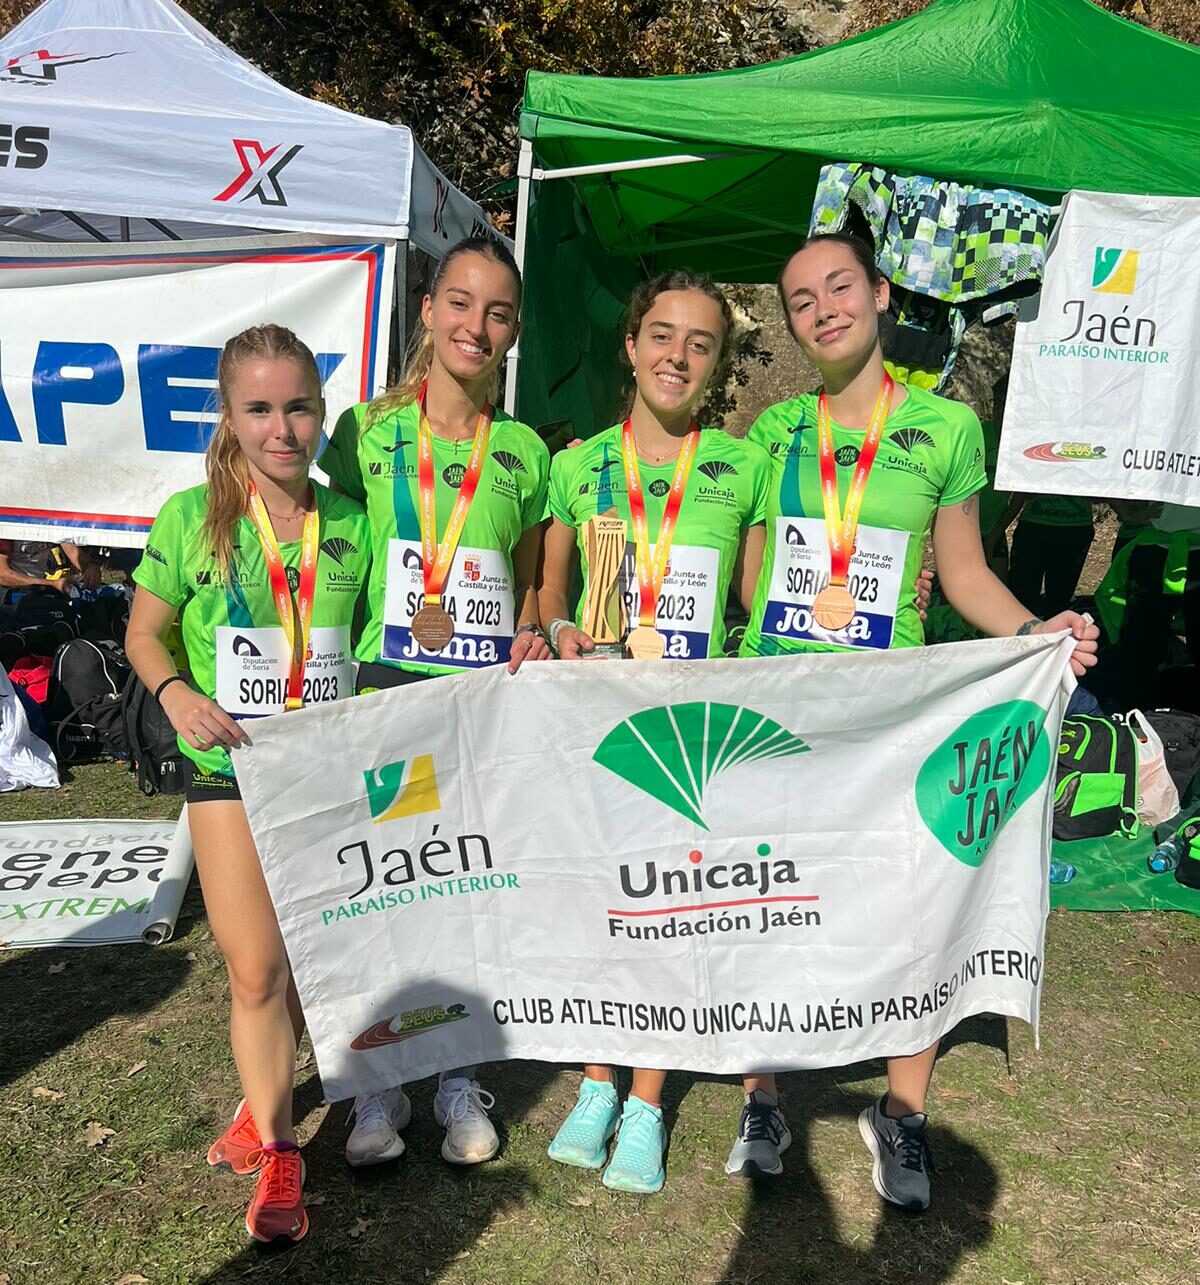 El equipo Sub-20 femenino del Unicaja Jaén Paraíso Interior conquista el bronce en el Nacional de clubes De Cross en Valonsadero